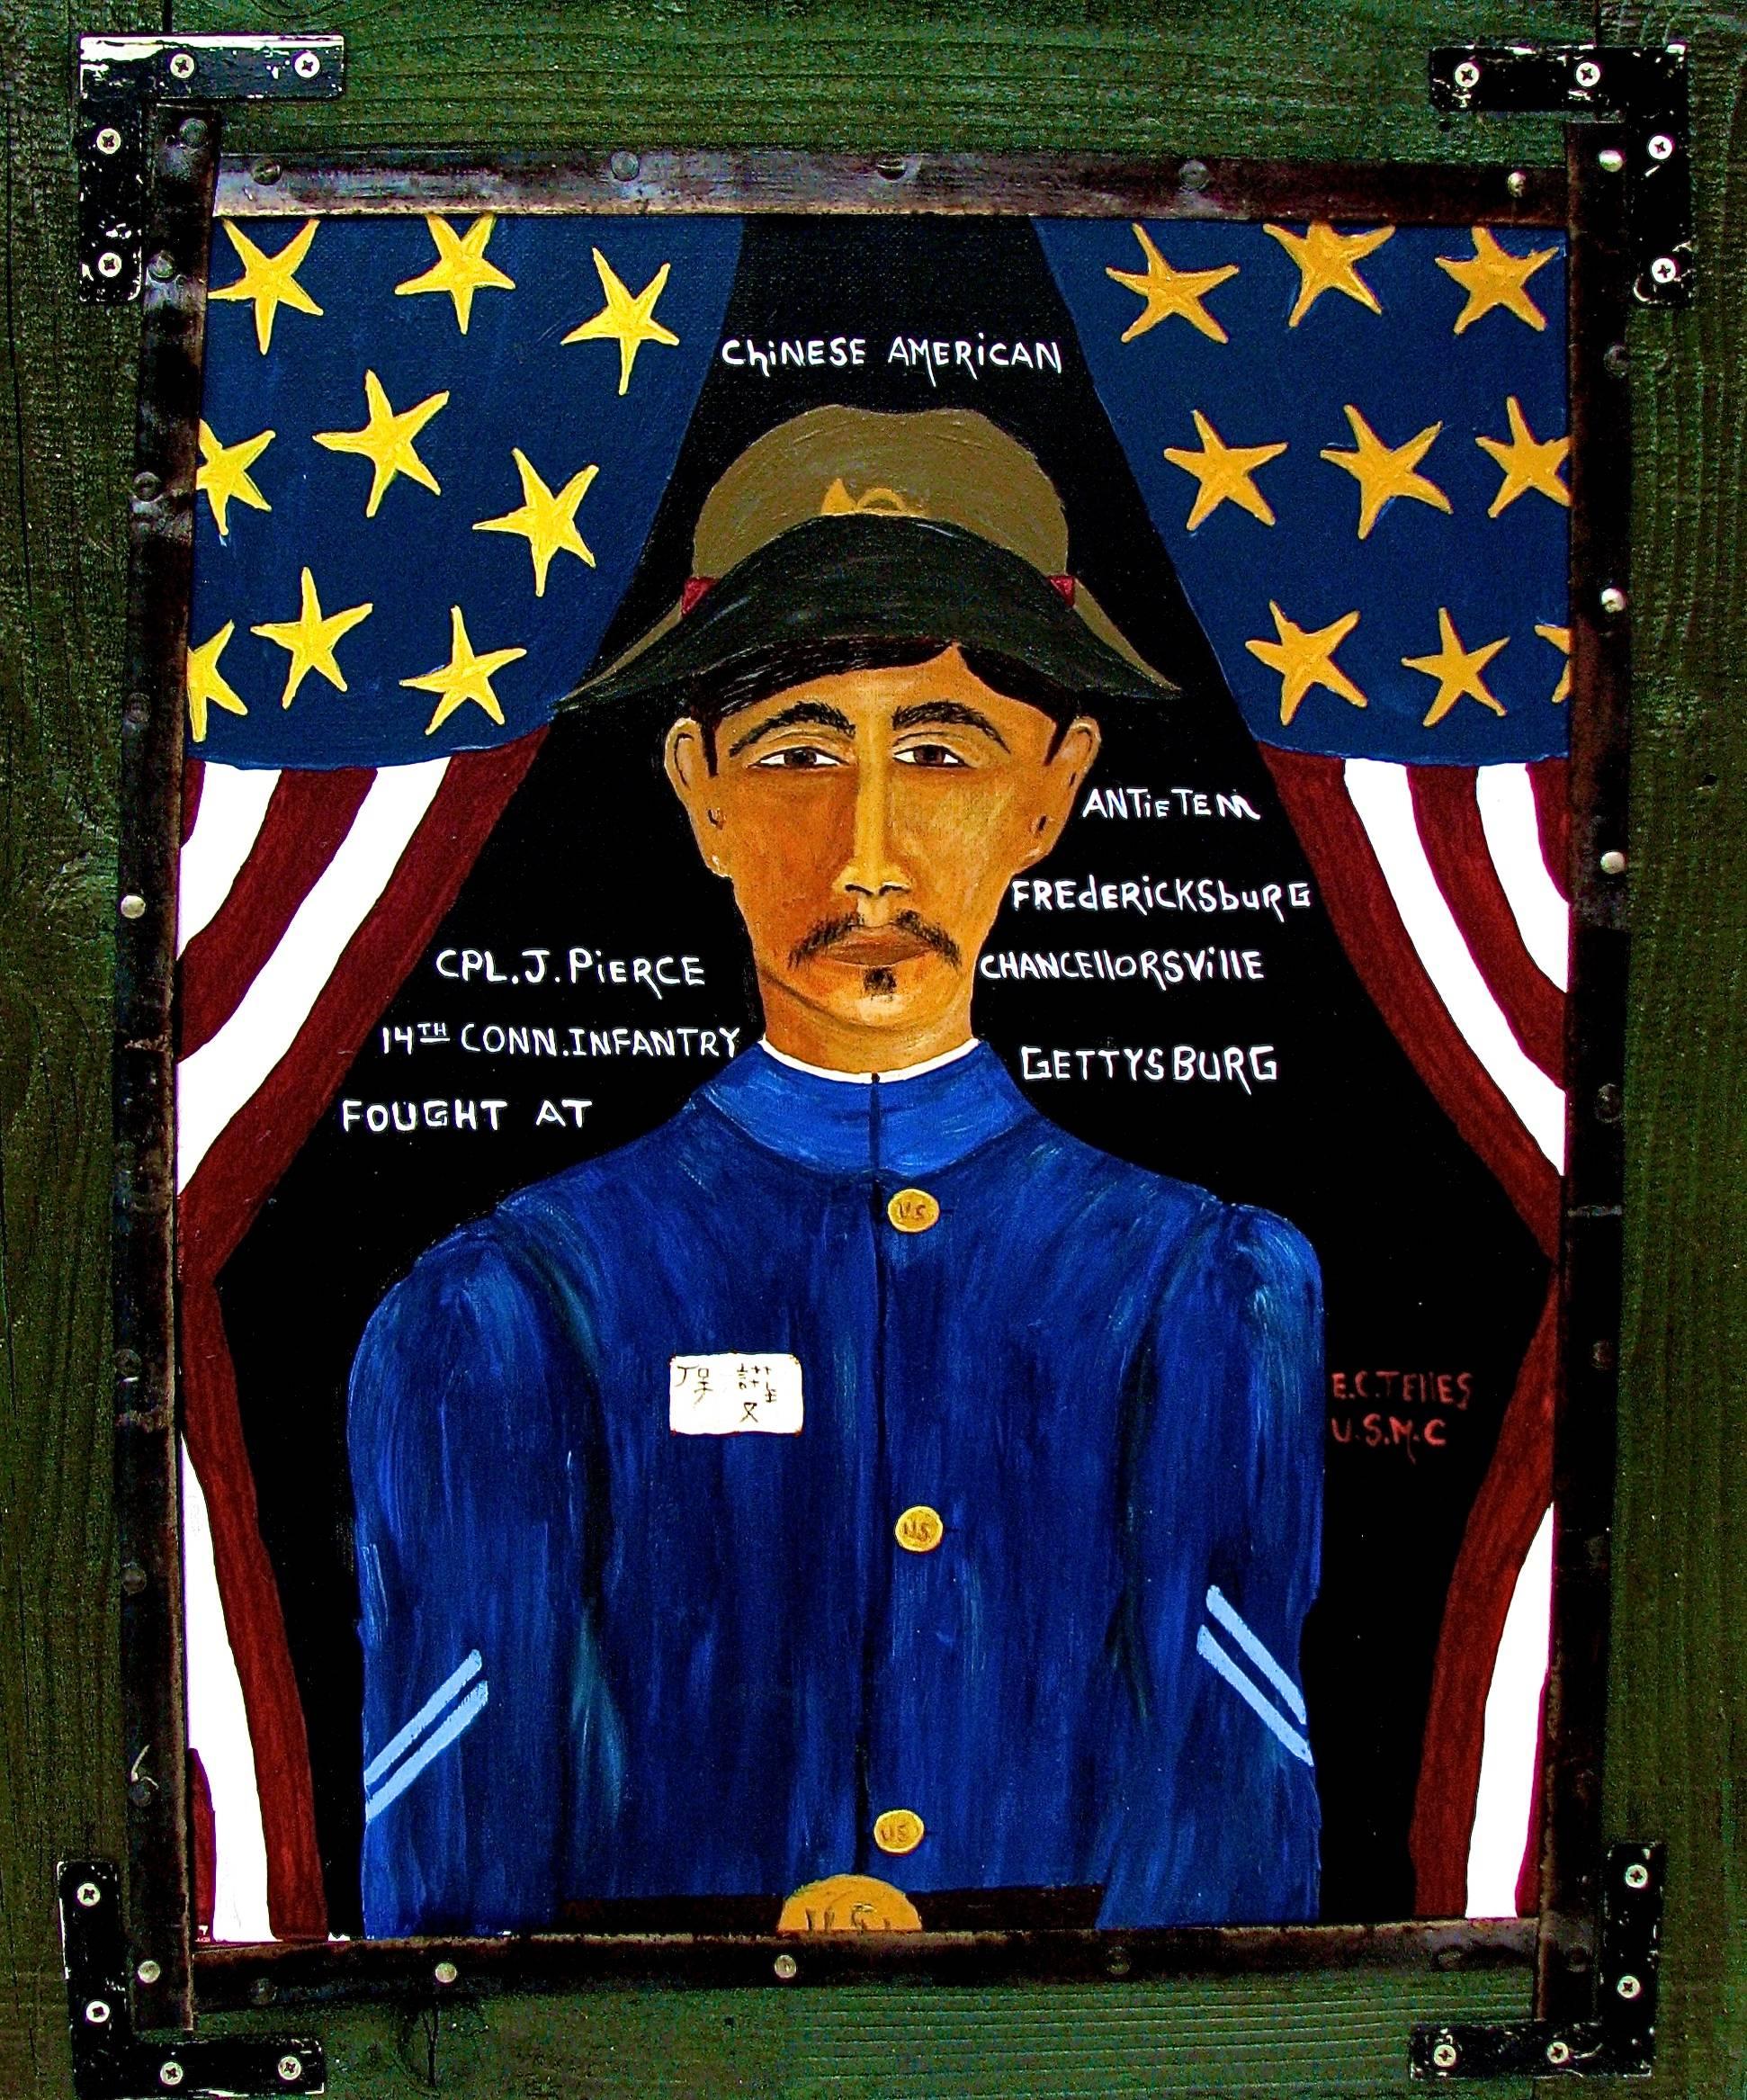 Elias Telles Portrait Painting - "C.P.L. J Pierce" Naive Portait of Chinese American Gettysburg Soldier